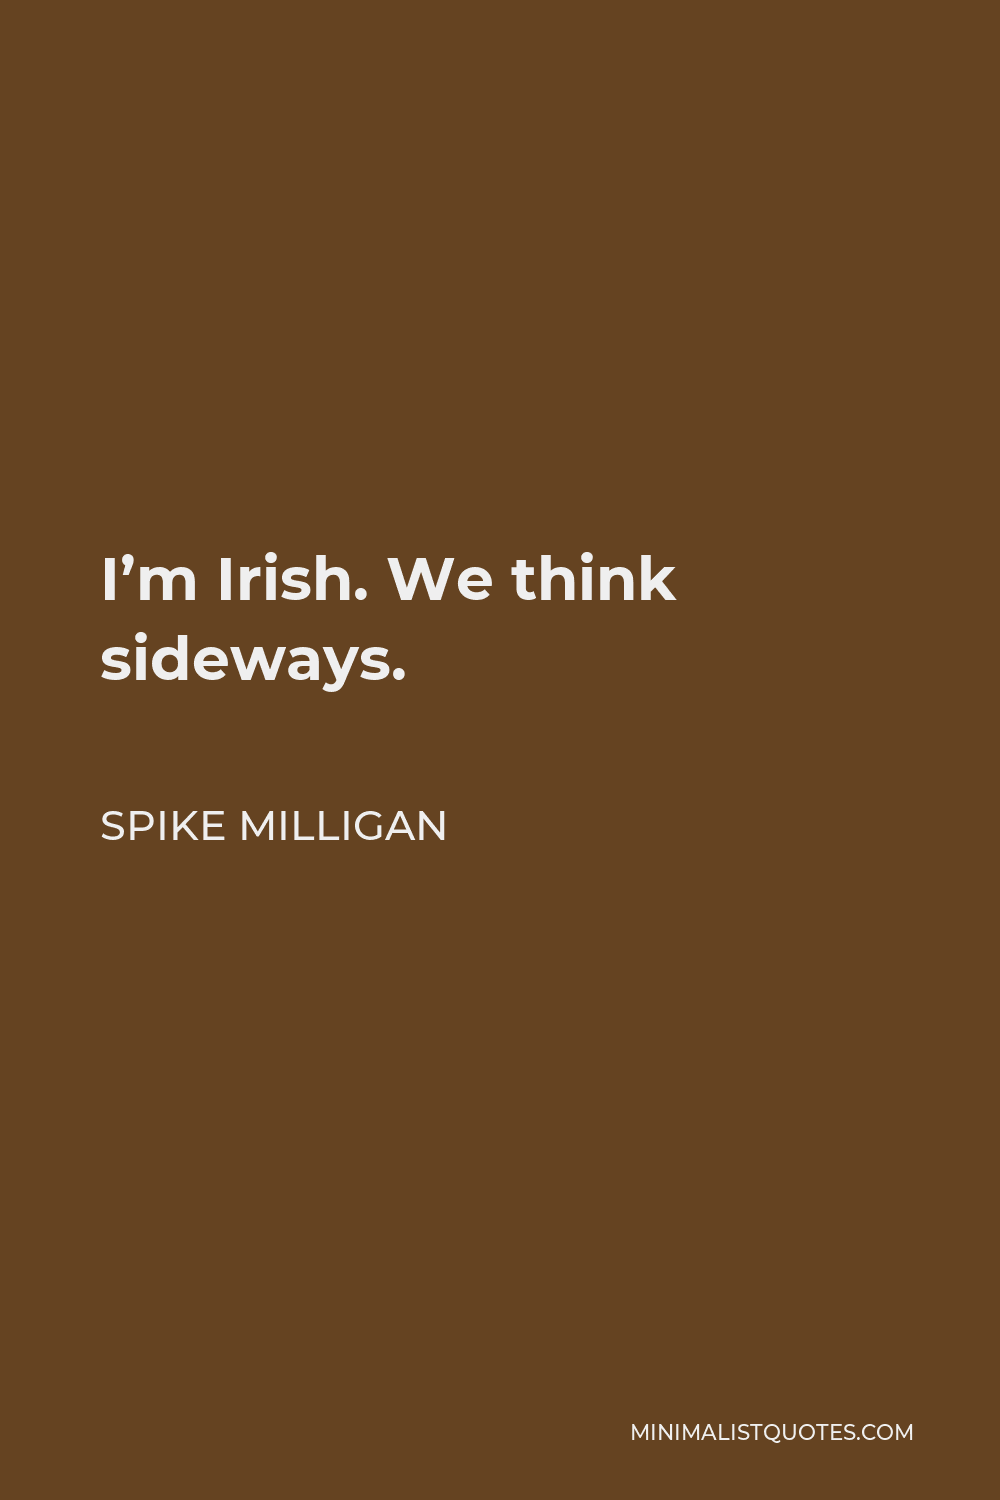 Spike Milligan Quote - I’m Irish. We think sideways.